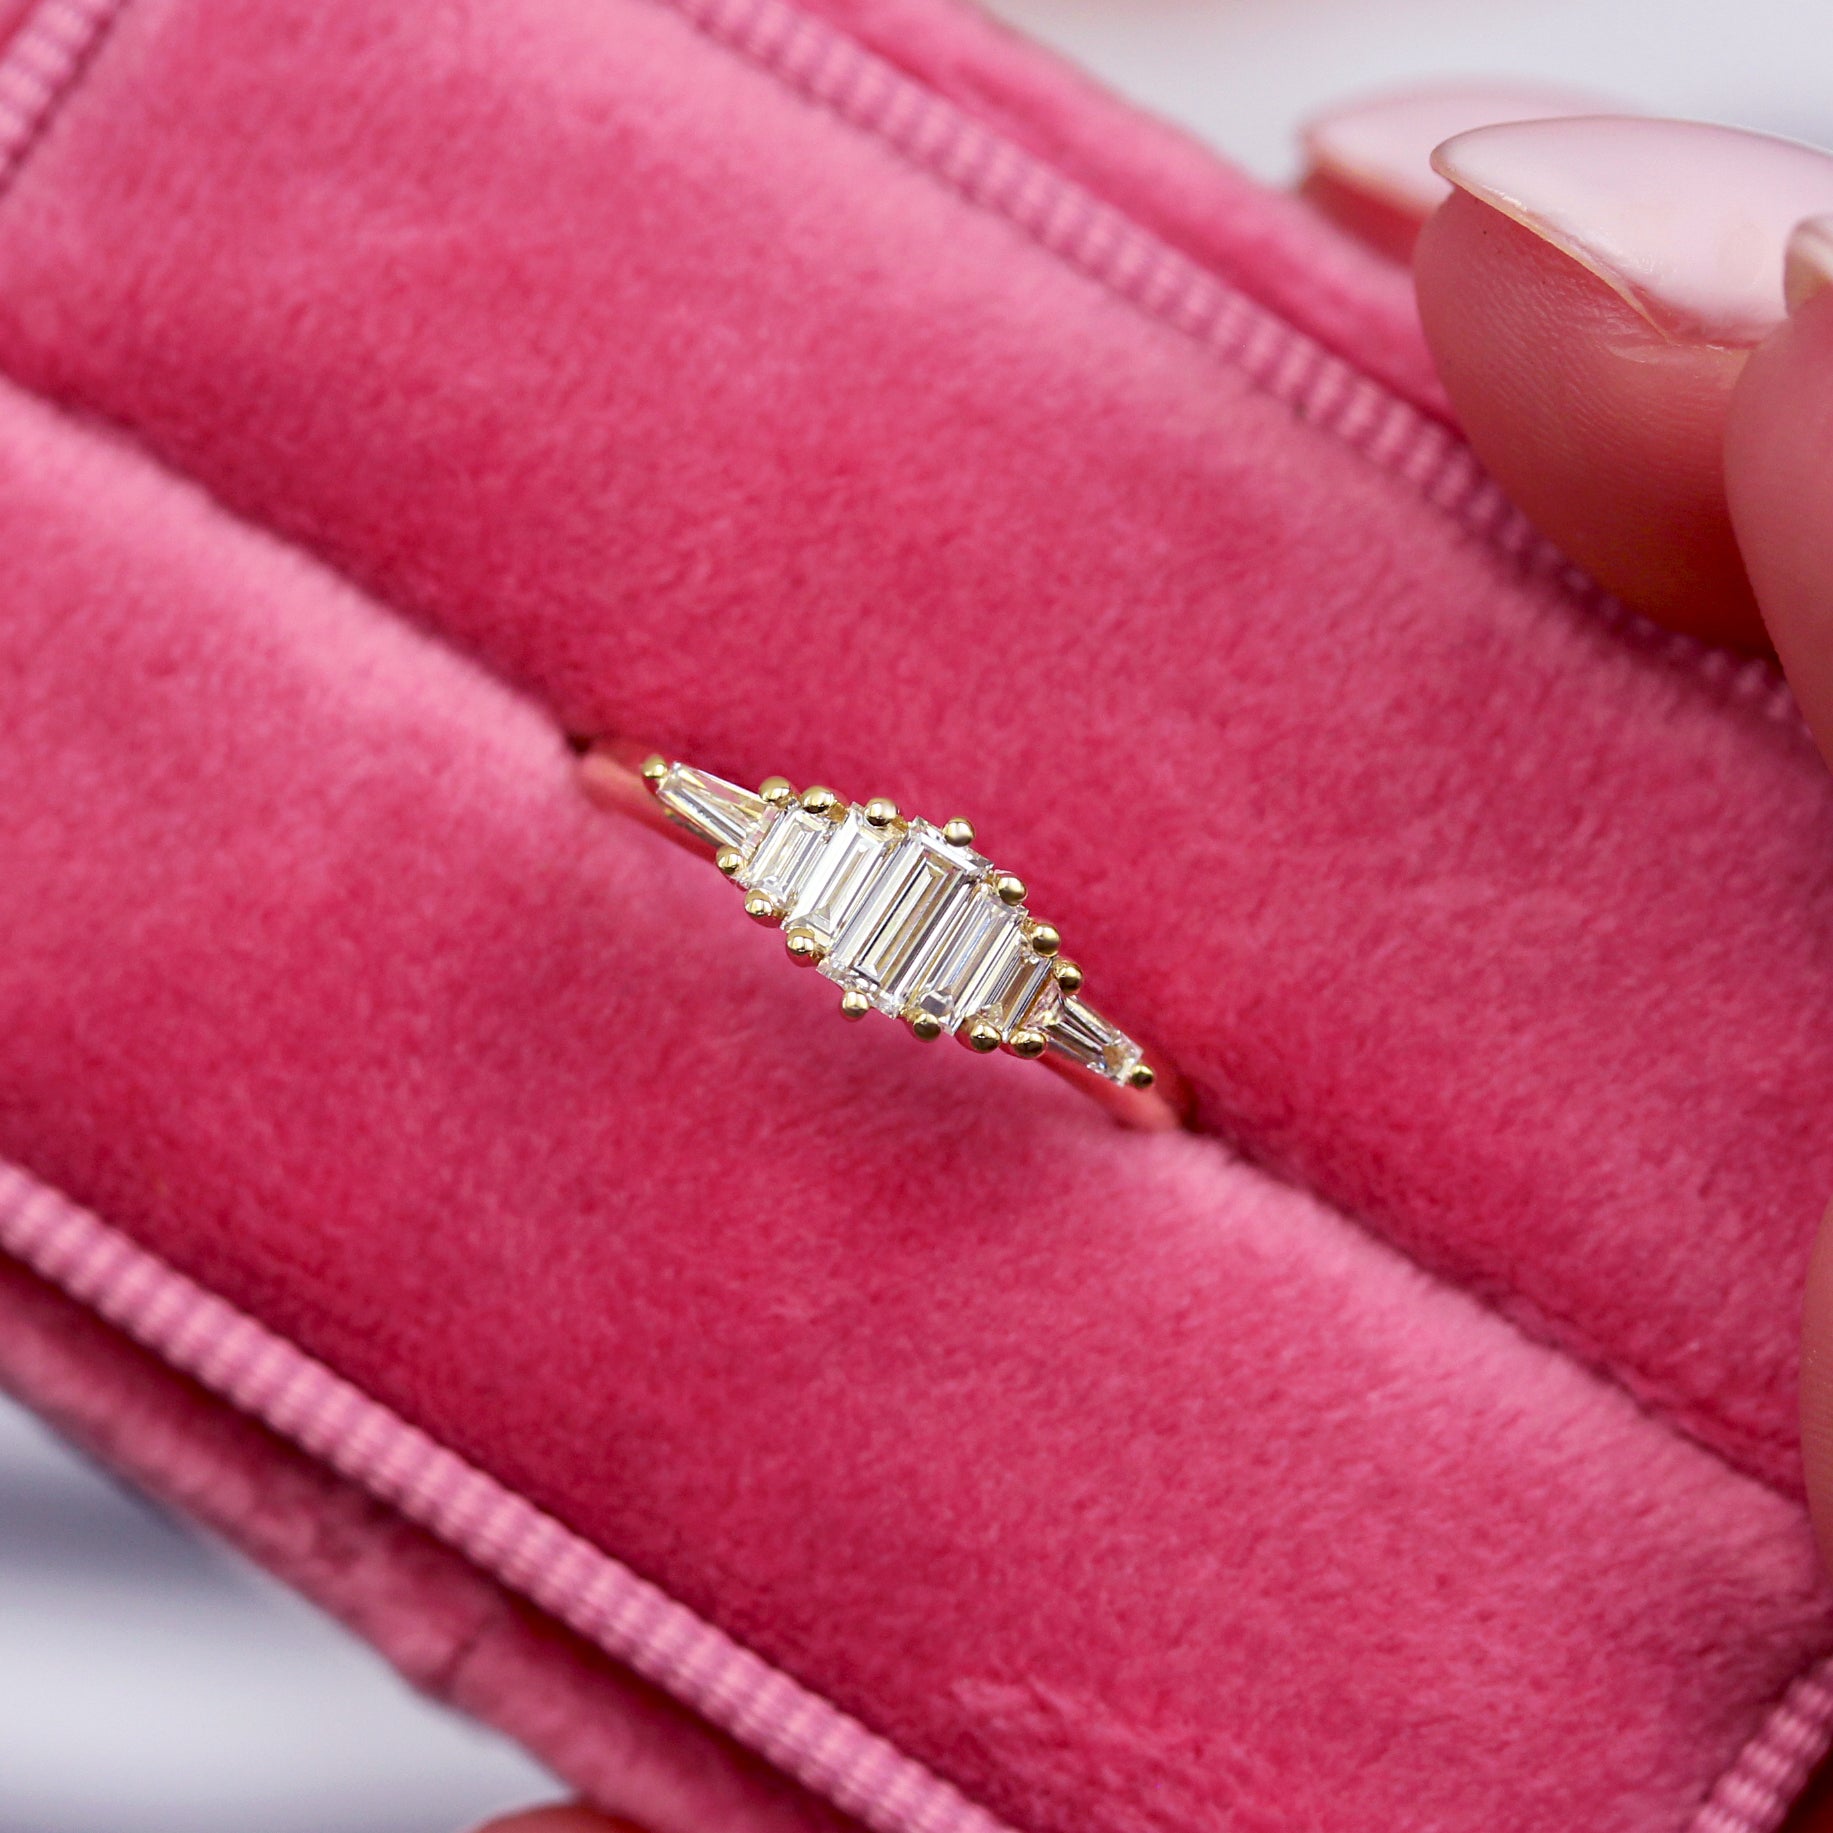 14K yellow gold elegant engagement ring